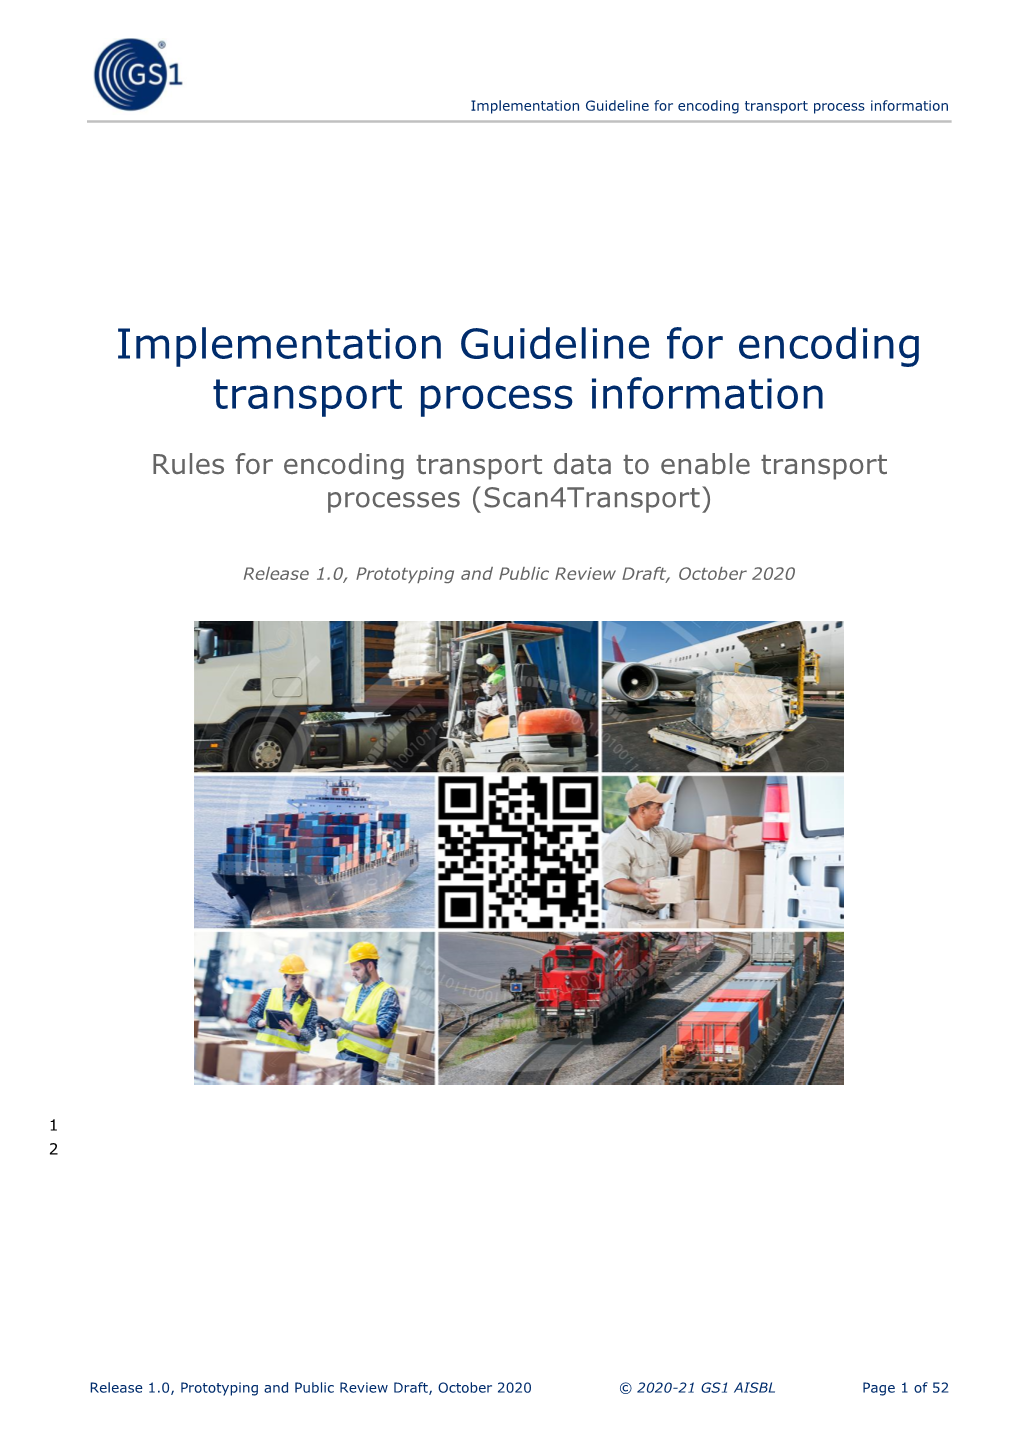 Implementation Guideline for Encoding Transport Process Information